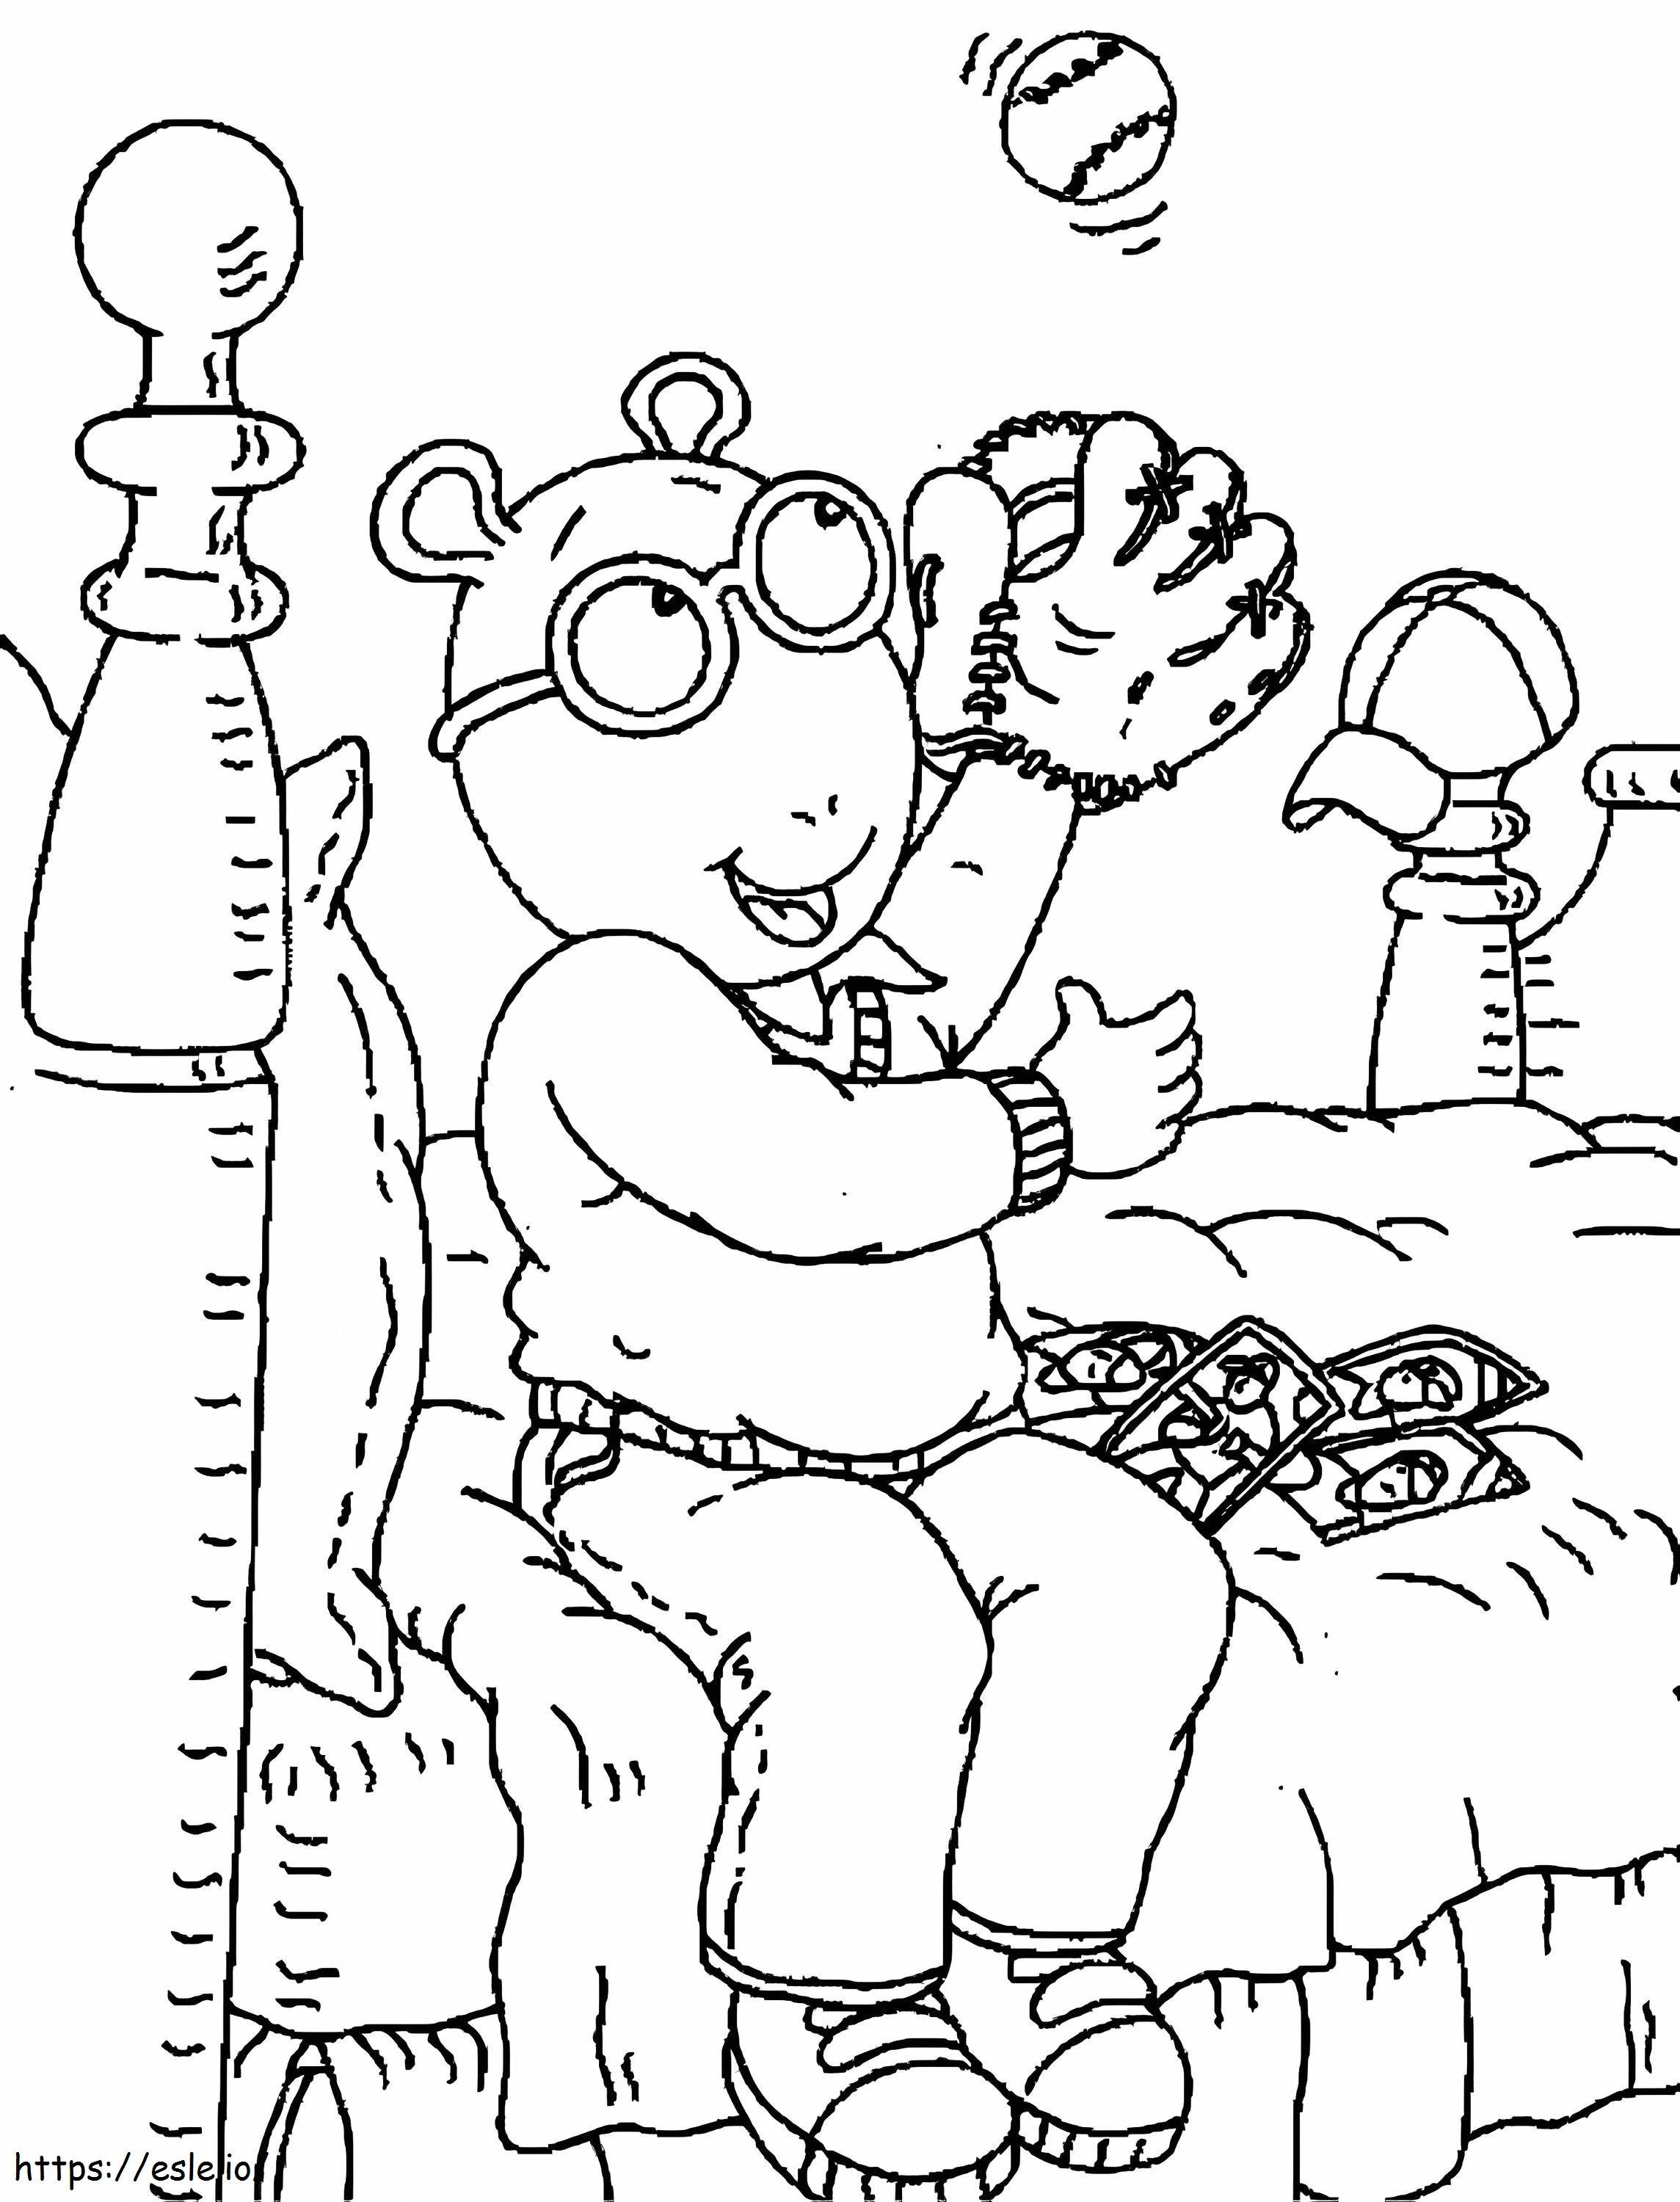 Arthur leer en la habitación para colorear